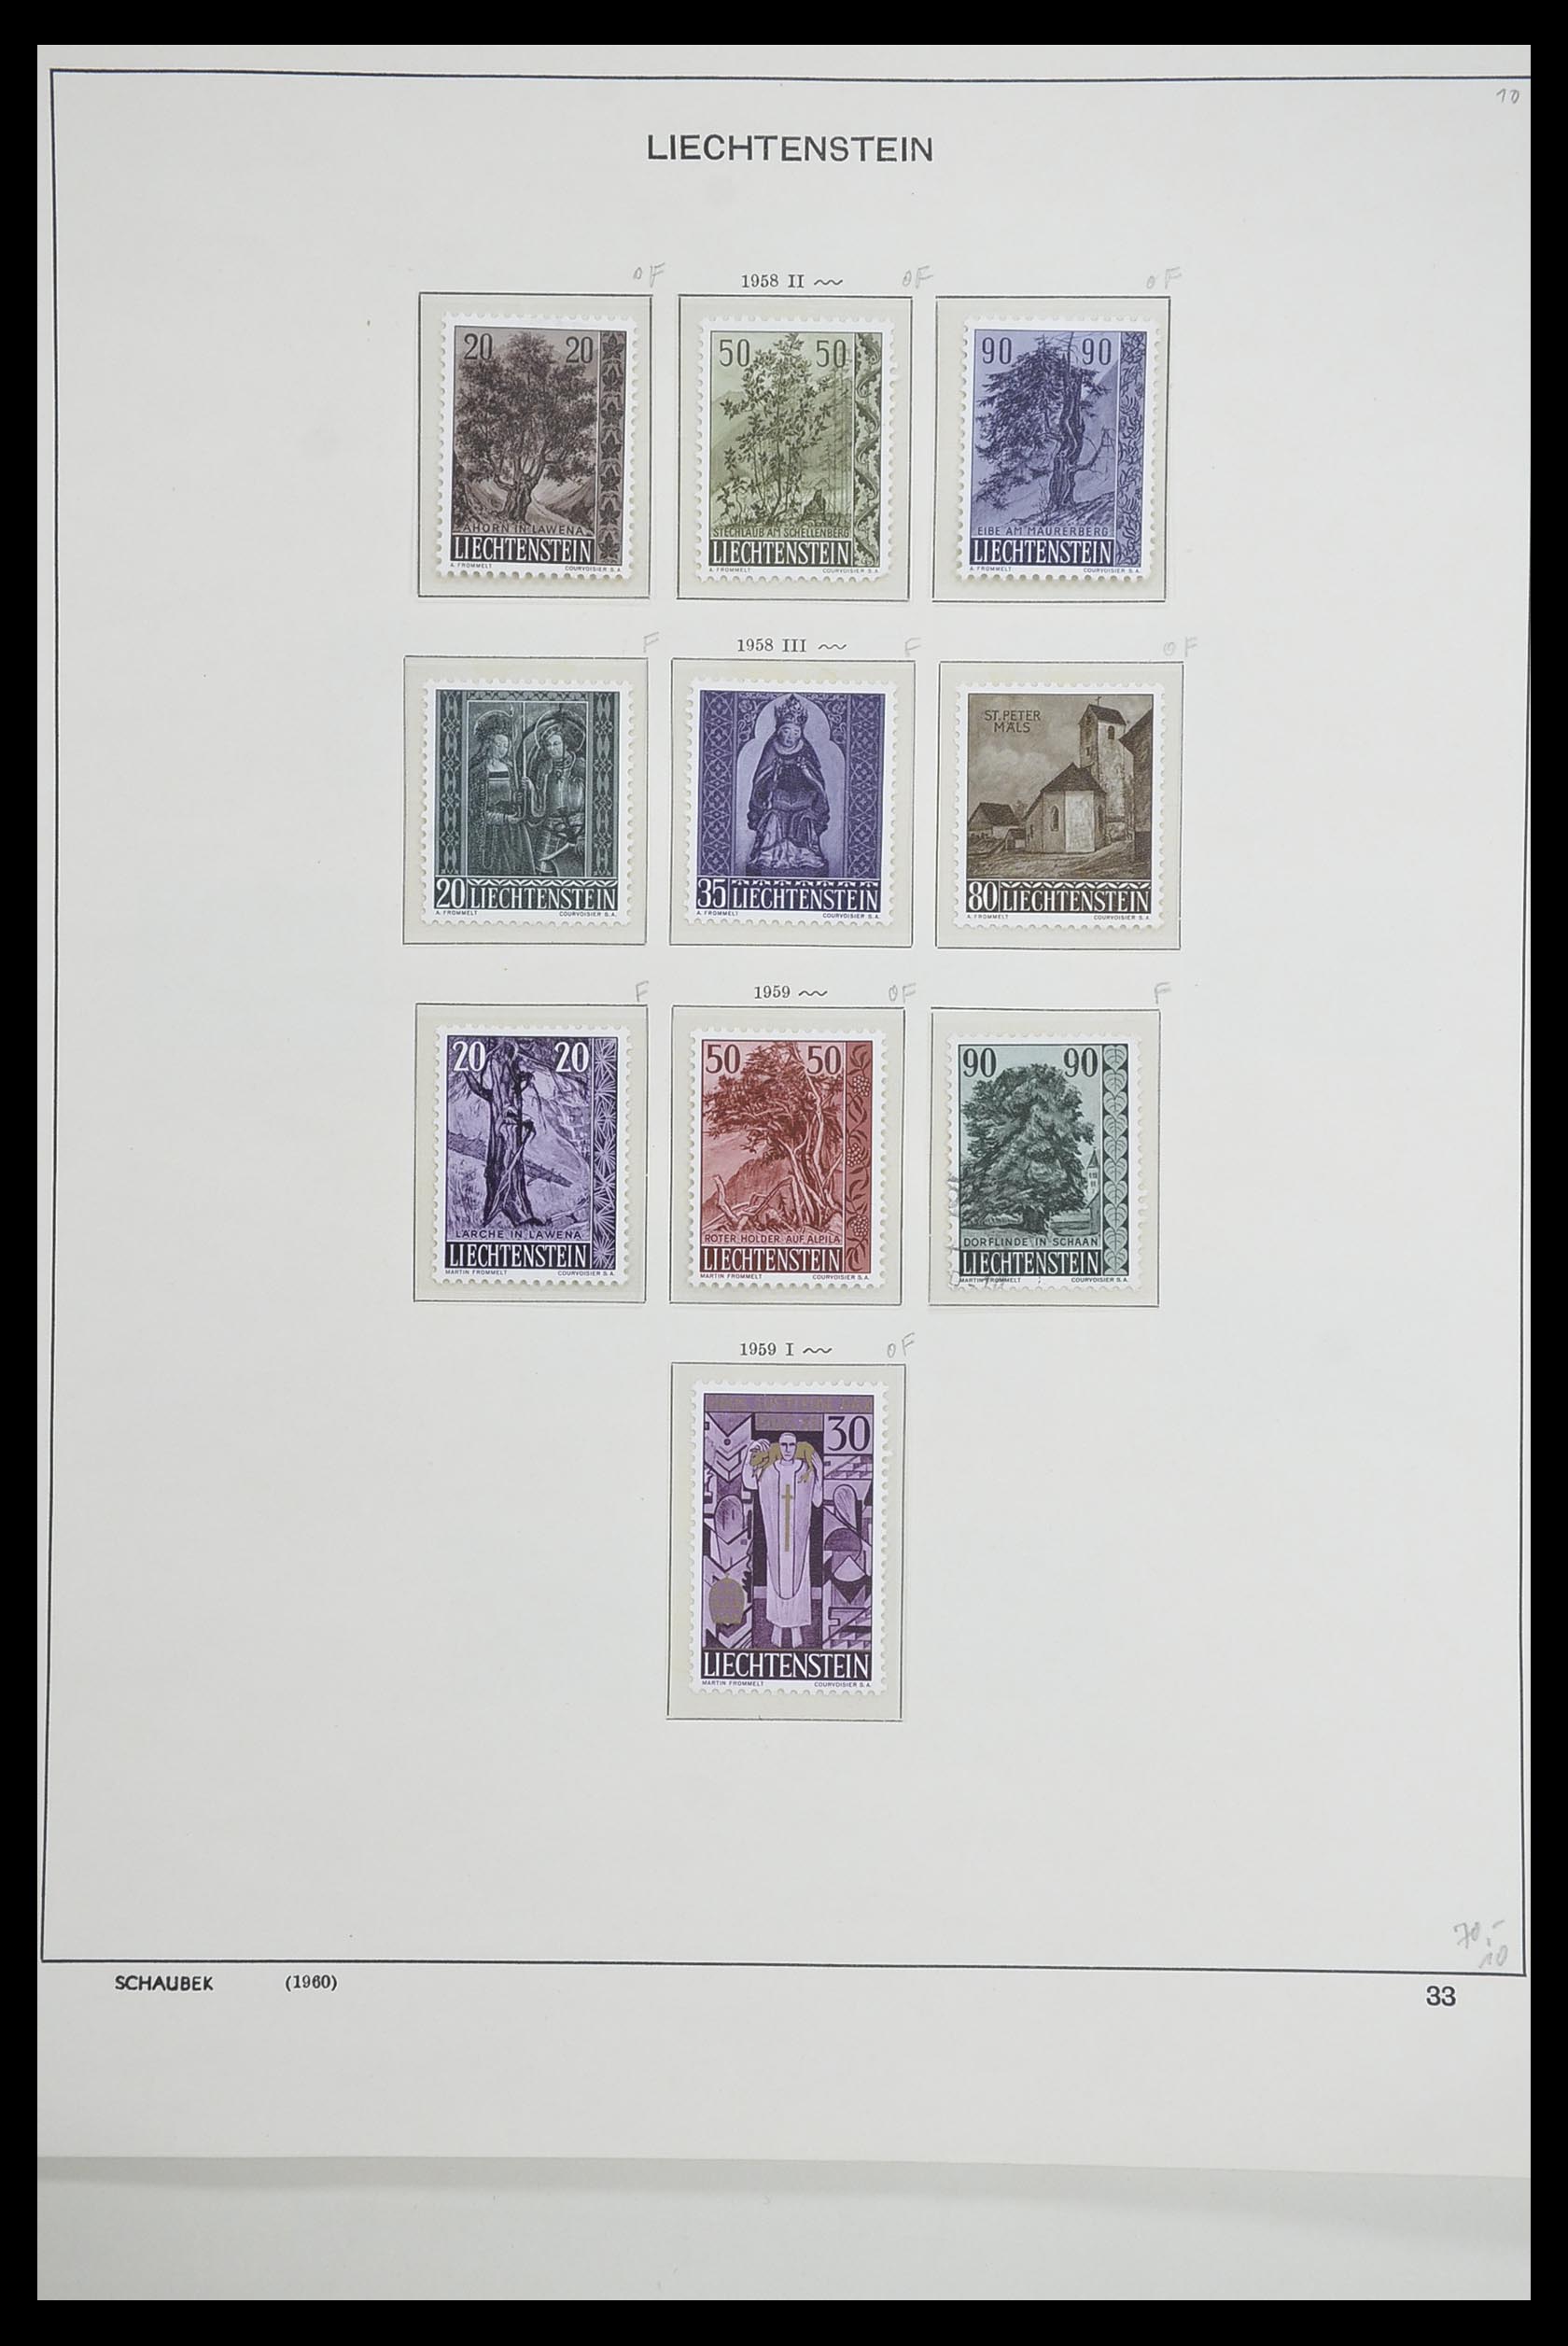 33274 034 - Stamp collection 33274 Liechtenstein 1912-1996.